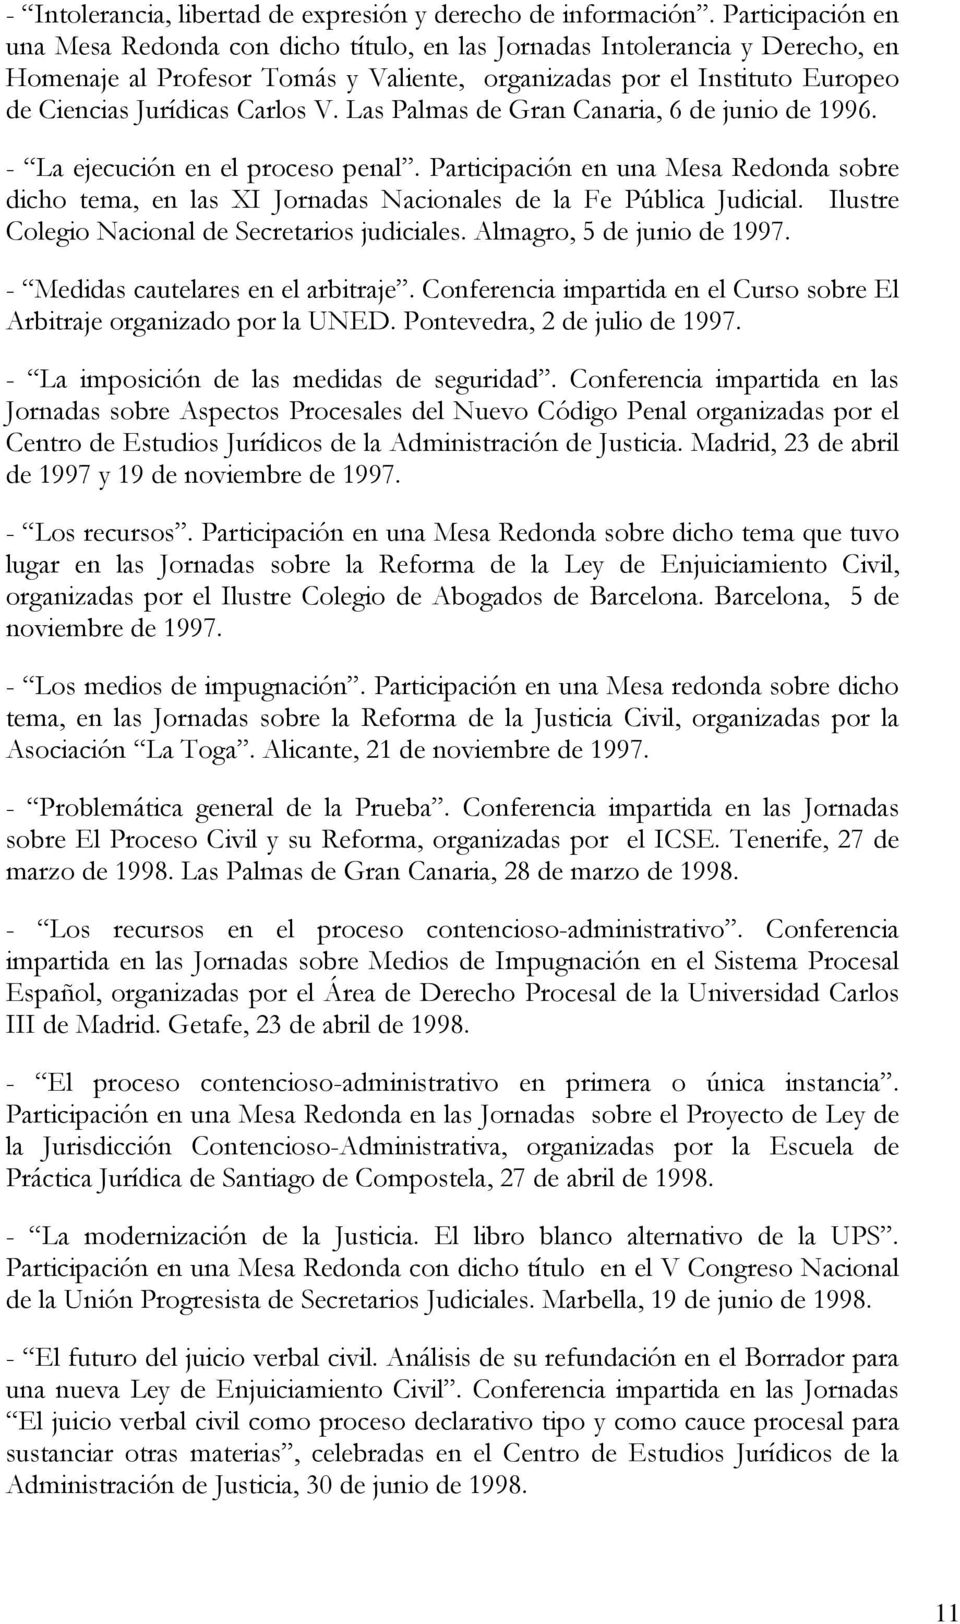 V. Las Palmas de Gran Canaria, 6 de junio de 1996. - La ejecución en el proceso penal. Participación en una Mesa Redonda sobre dicho tema, en las XI Jornadas Nacionales de la Fe Pública Judicial.